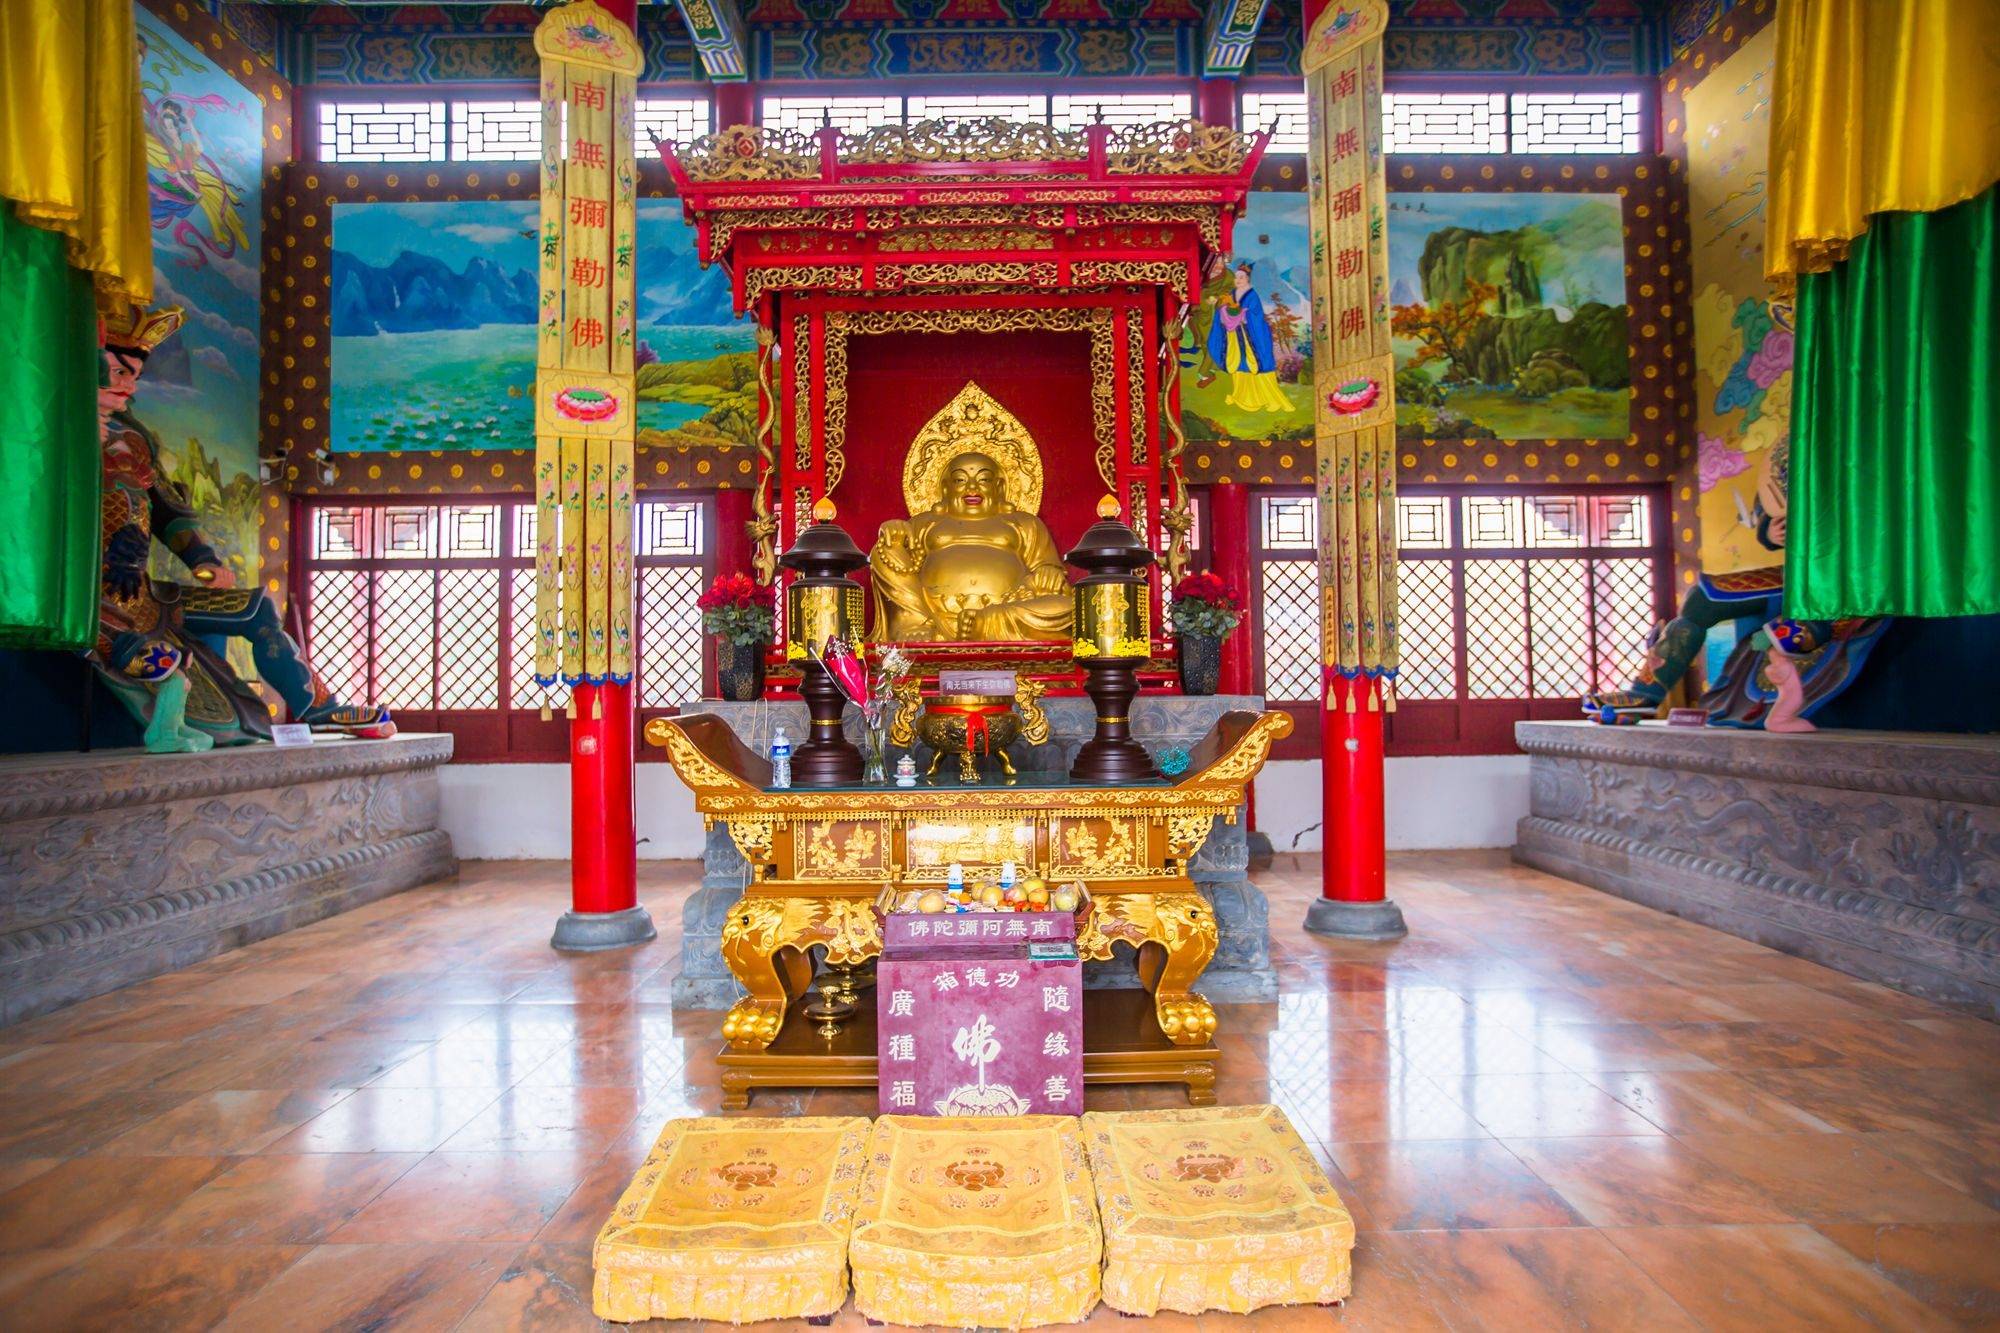 来邯郸,广府古城是很多人的必打卡地,而这里的甘露寺因为历史悠久也